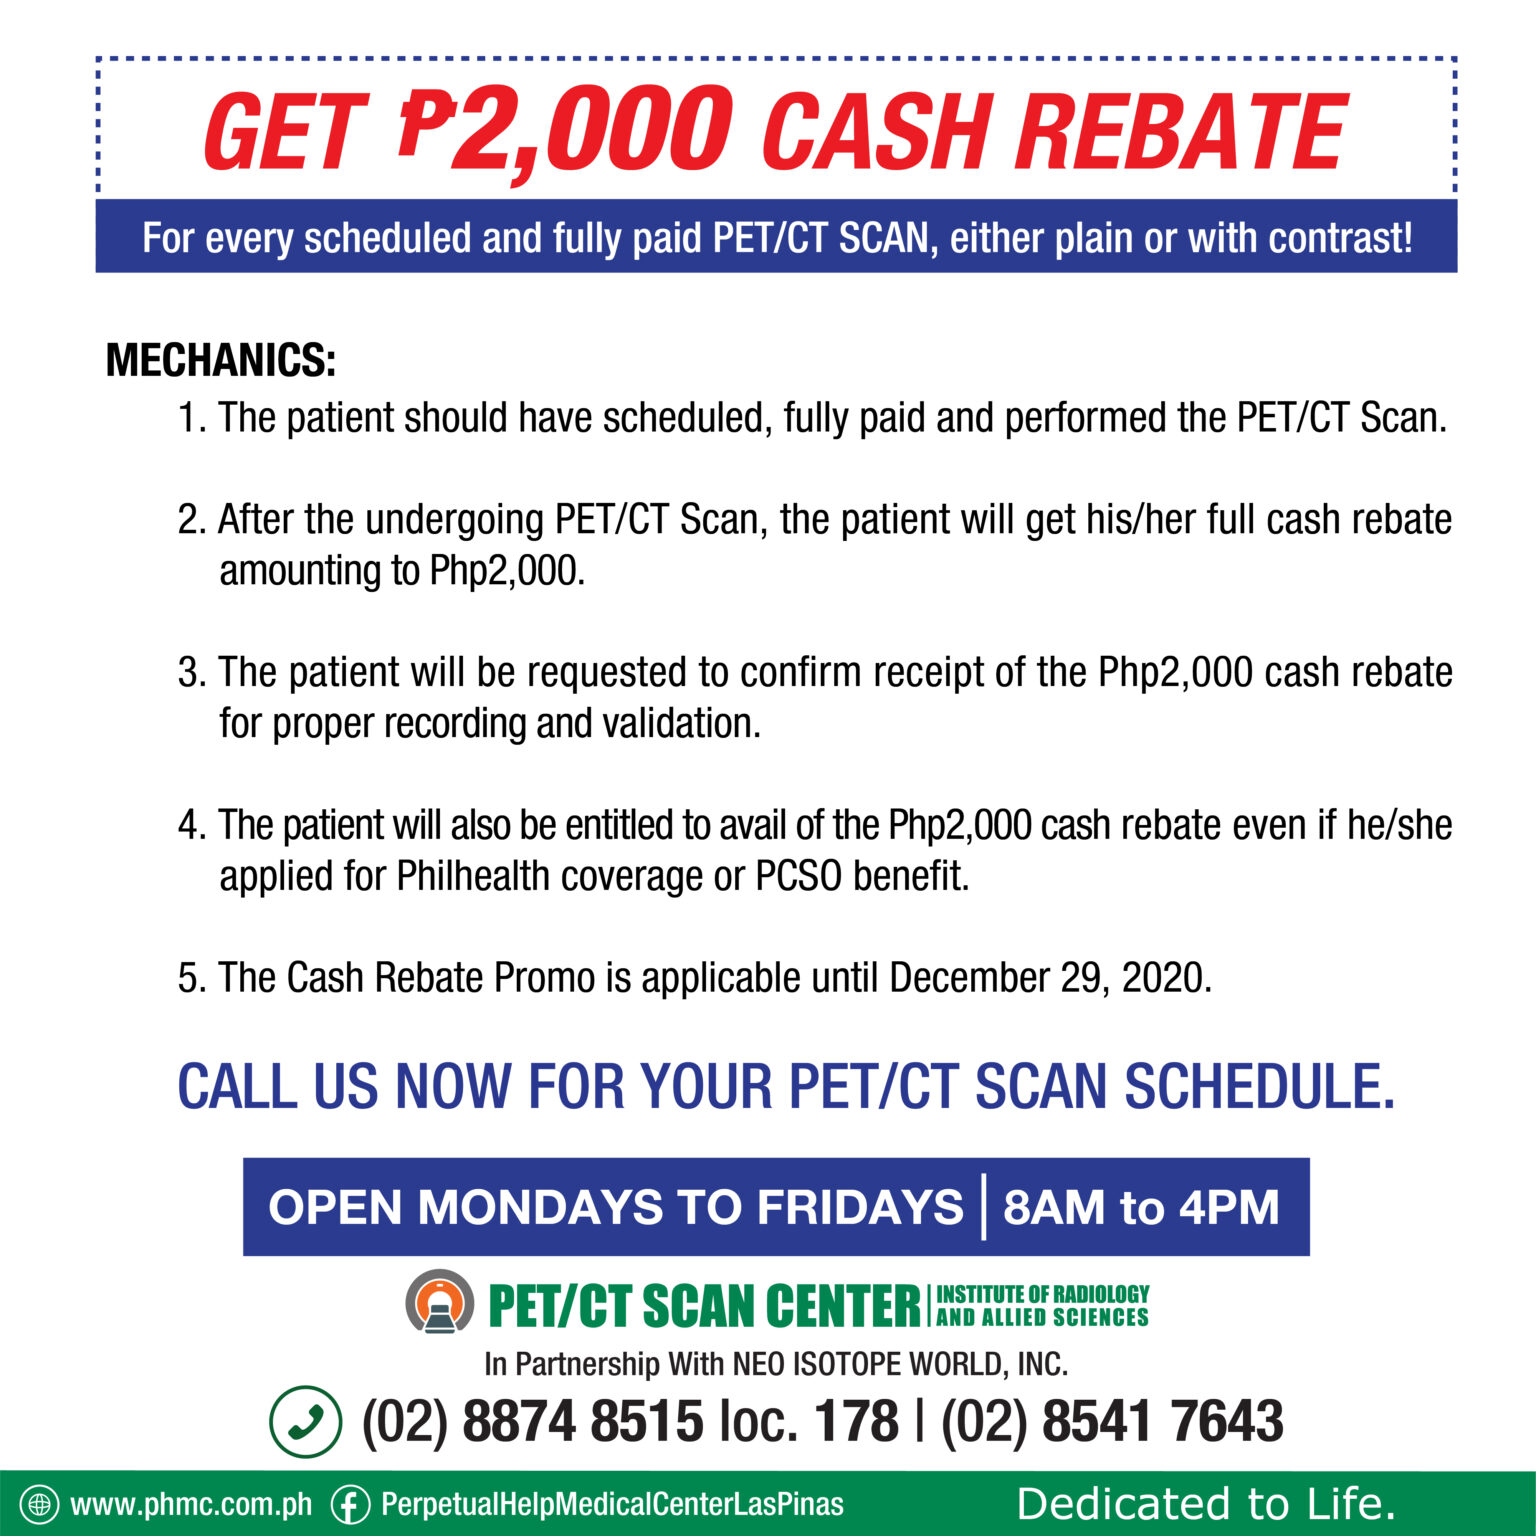 pet-ct-scan-p2-000-cash-rebate-promo-perpetual-help-medical-center